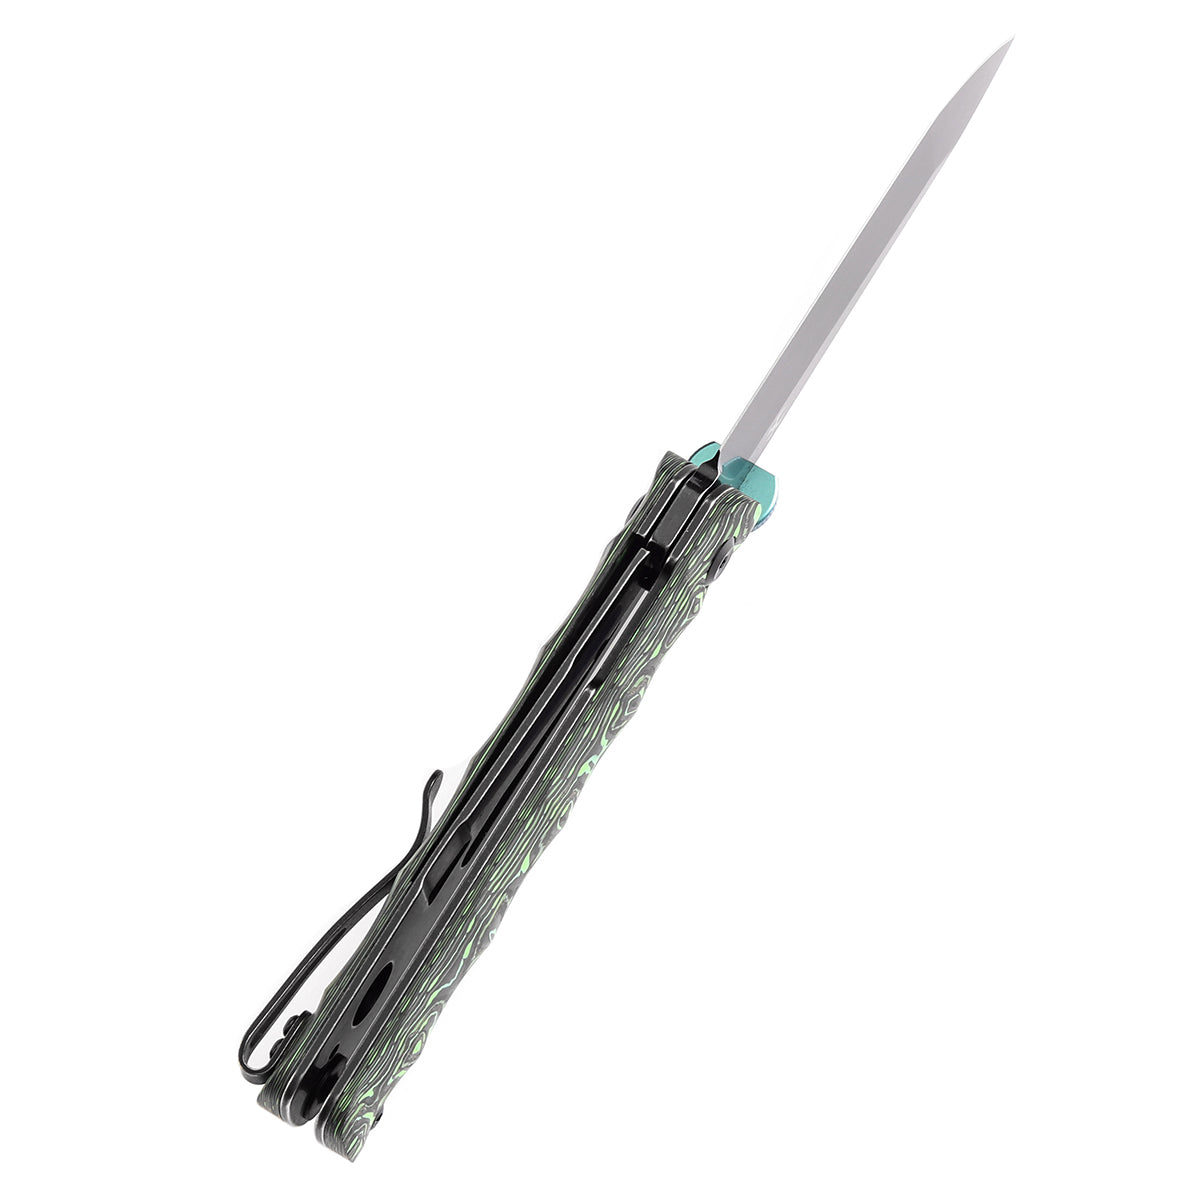 Kansept BTF K1064A2 CPM-S35VN Blade Grass Green Carbon Fiber Handle Edc Flipper Knife